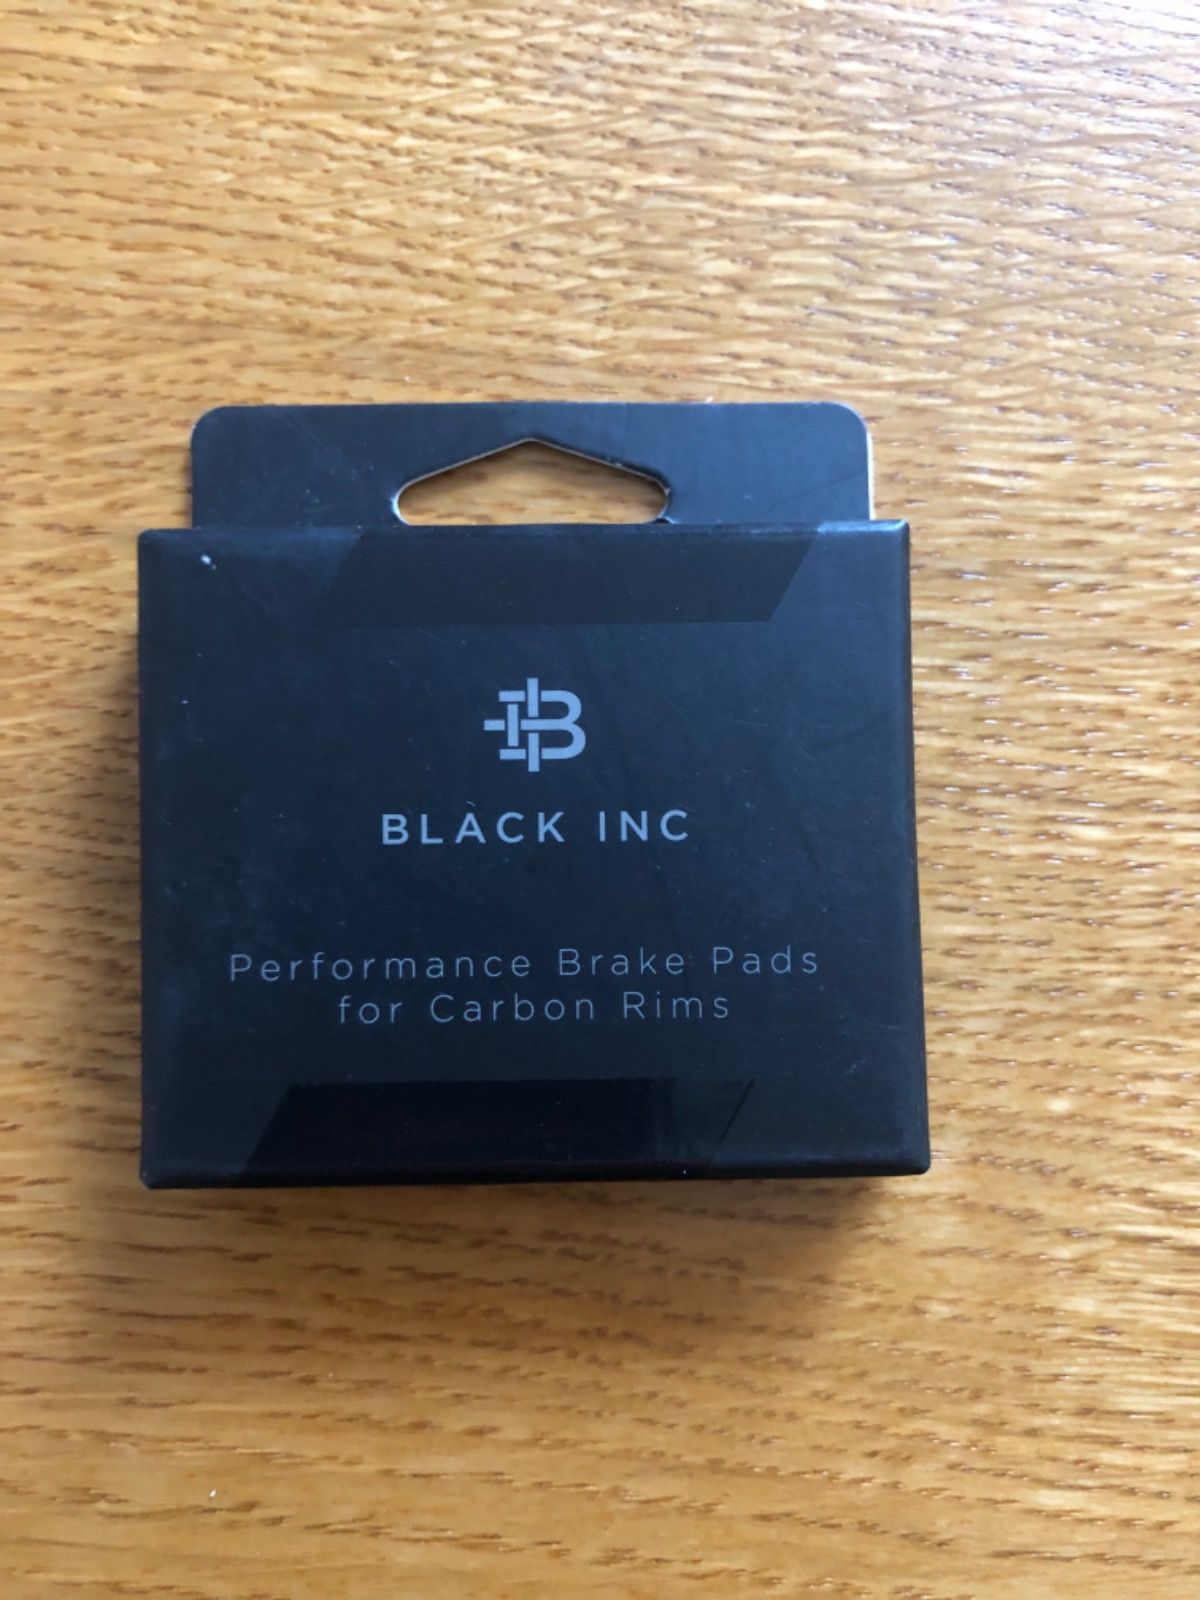 Тормозные колодки для карбоновых ободов марки Black Inc.